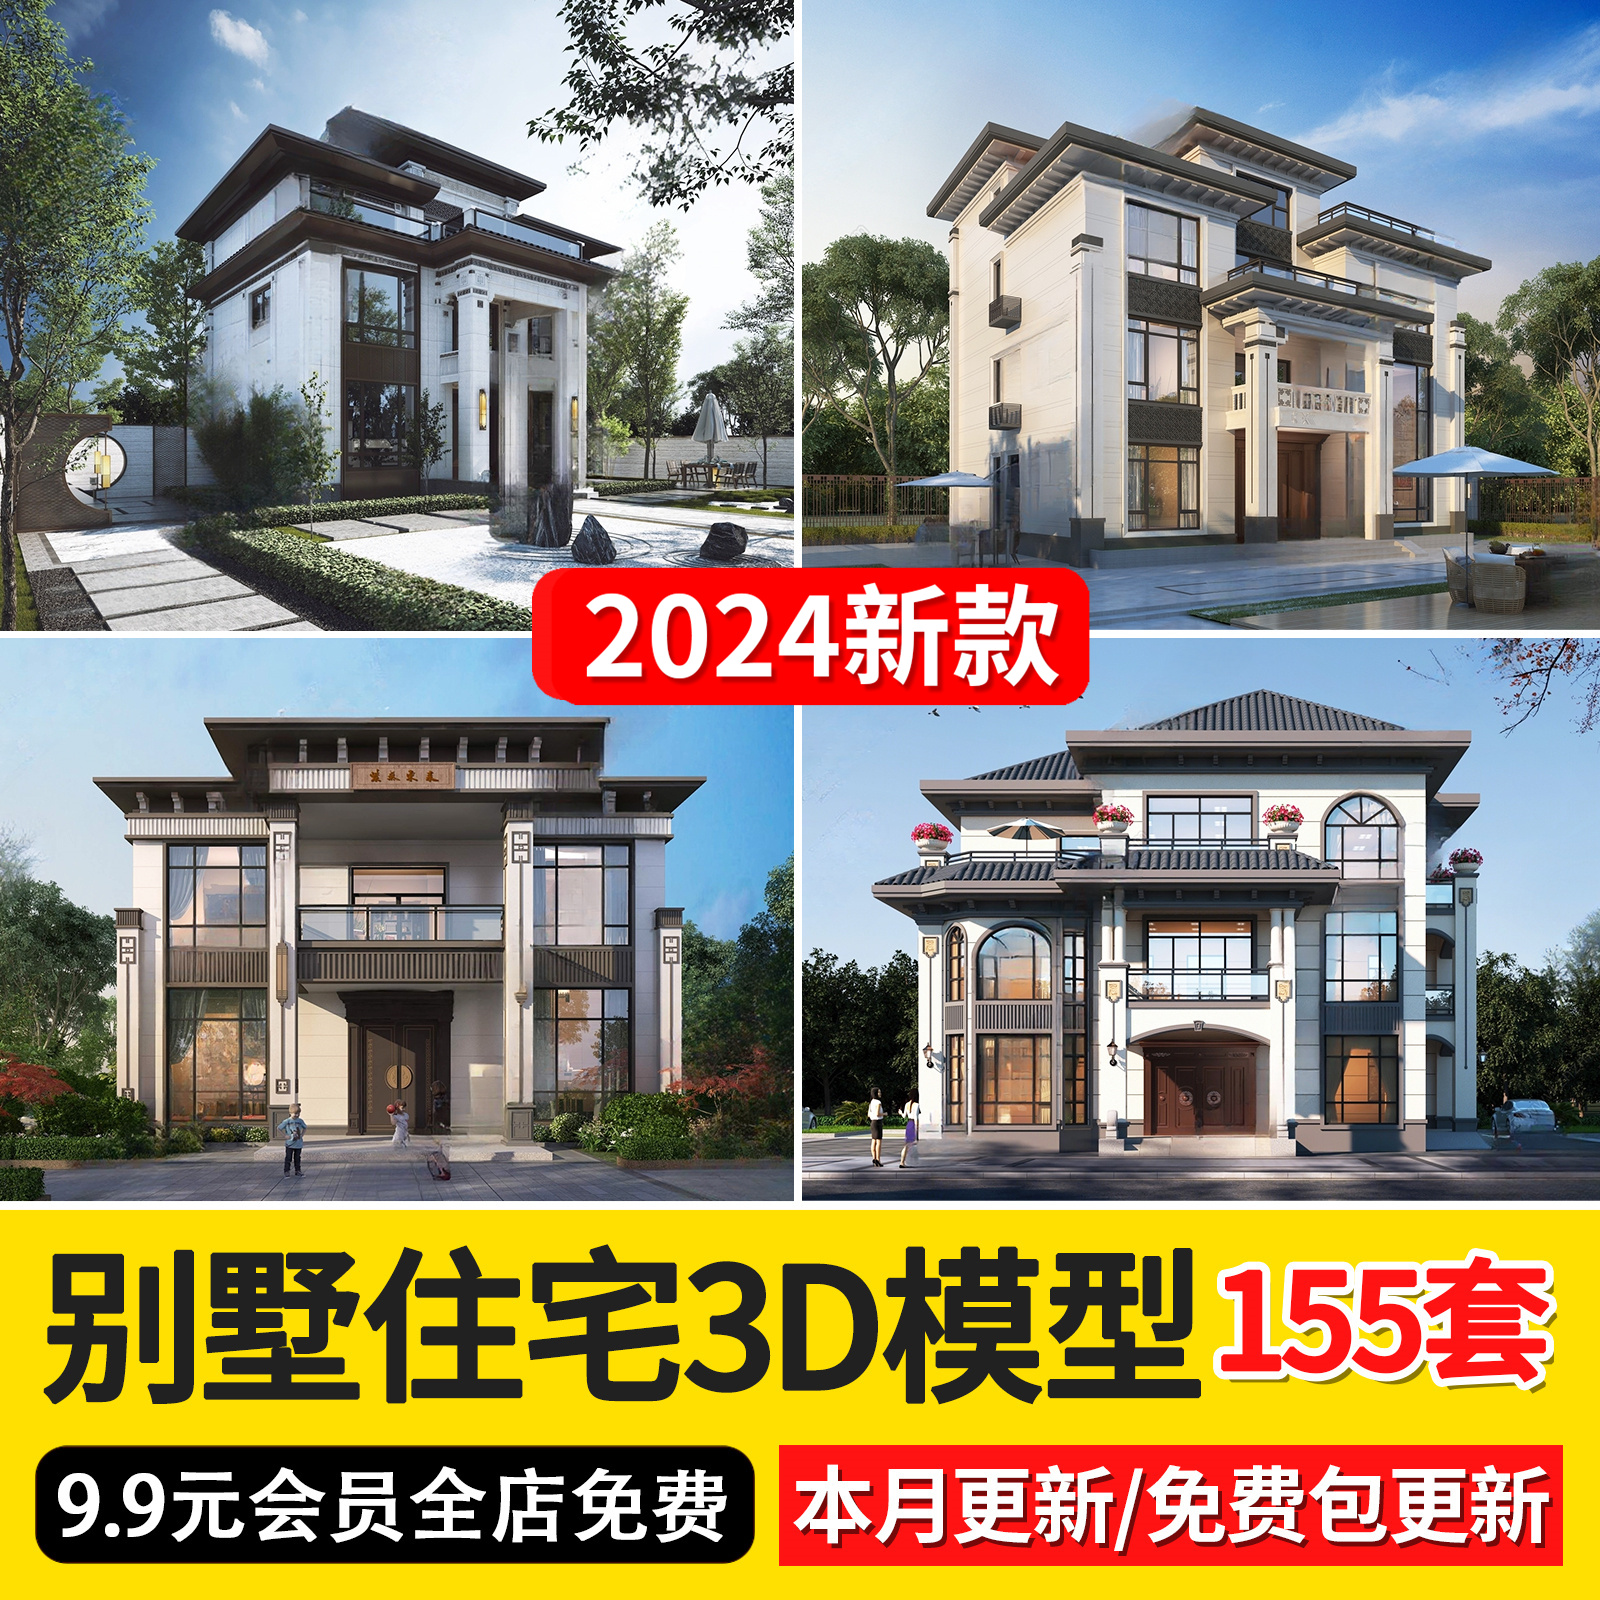 2024现代中式欧式别墅住宅3d模型新农村建筑外观立面3dmax模型库